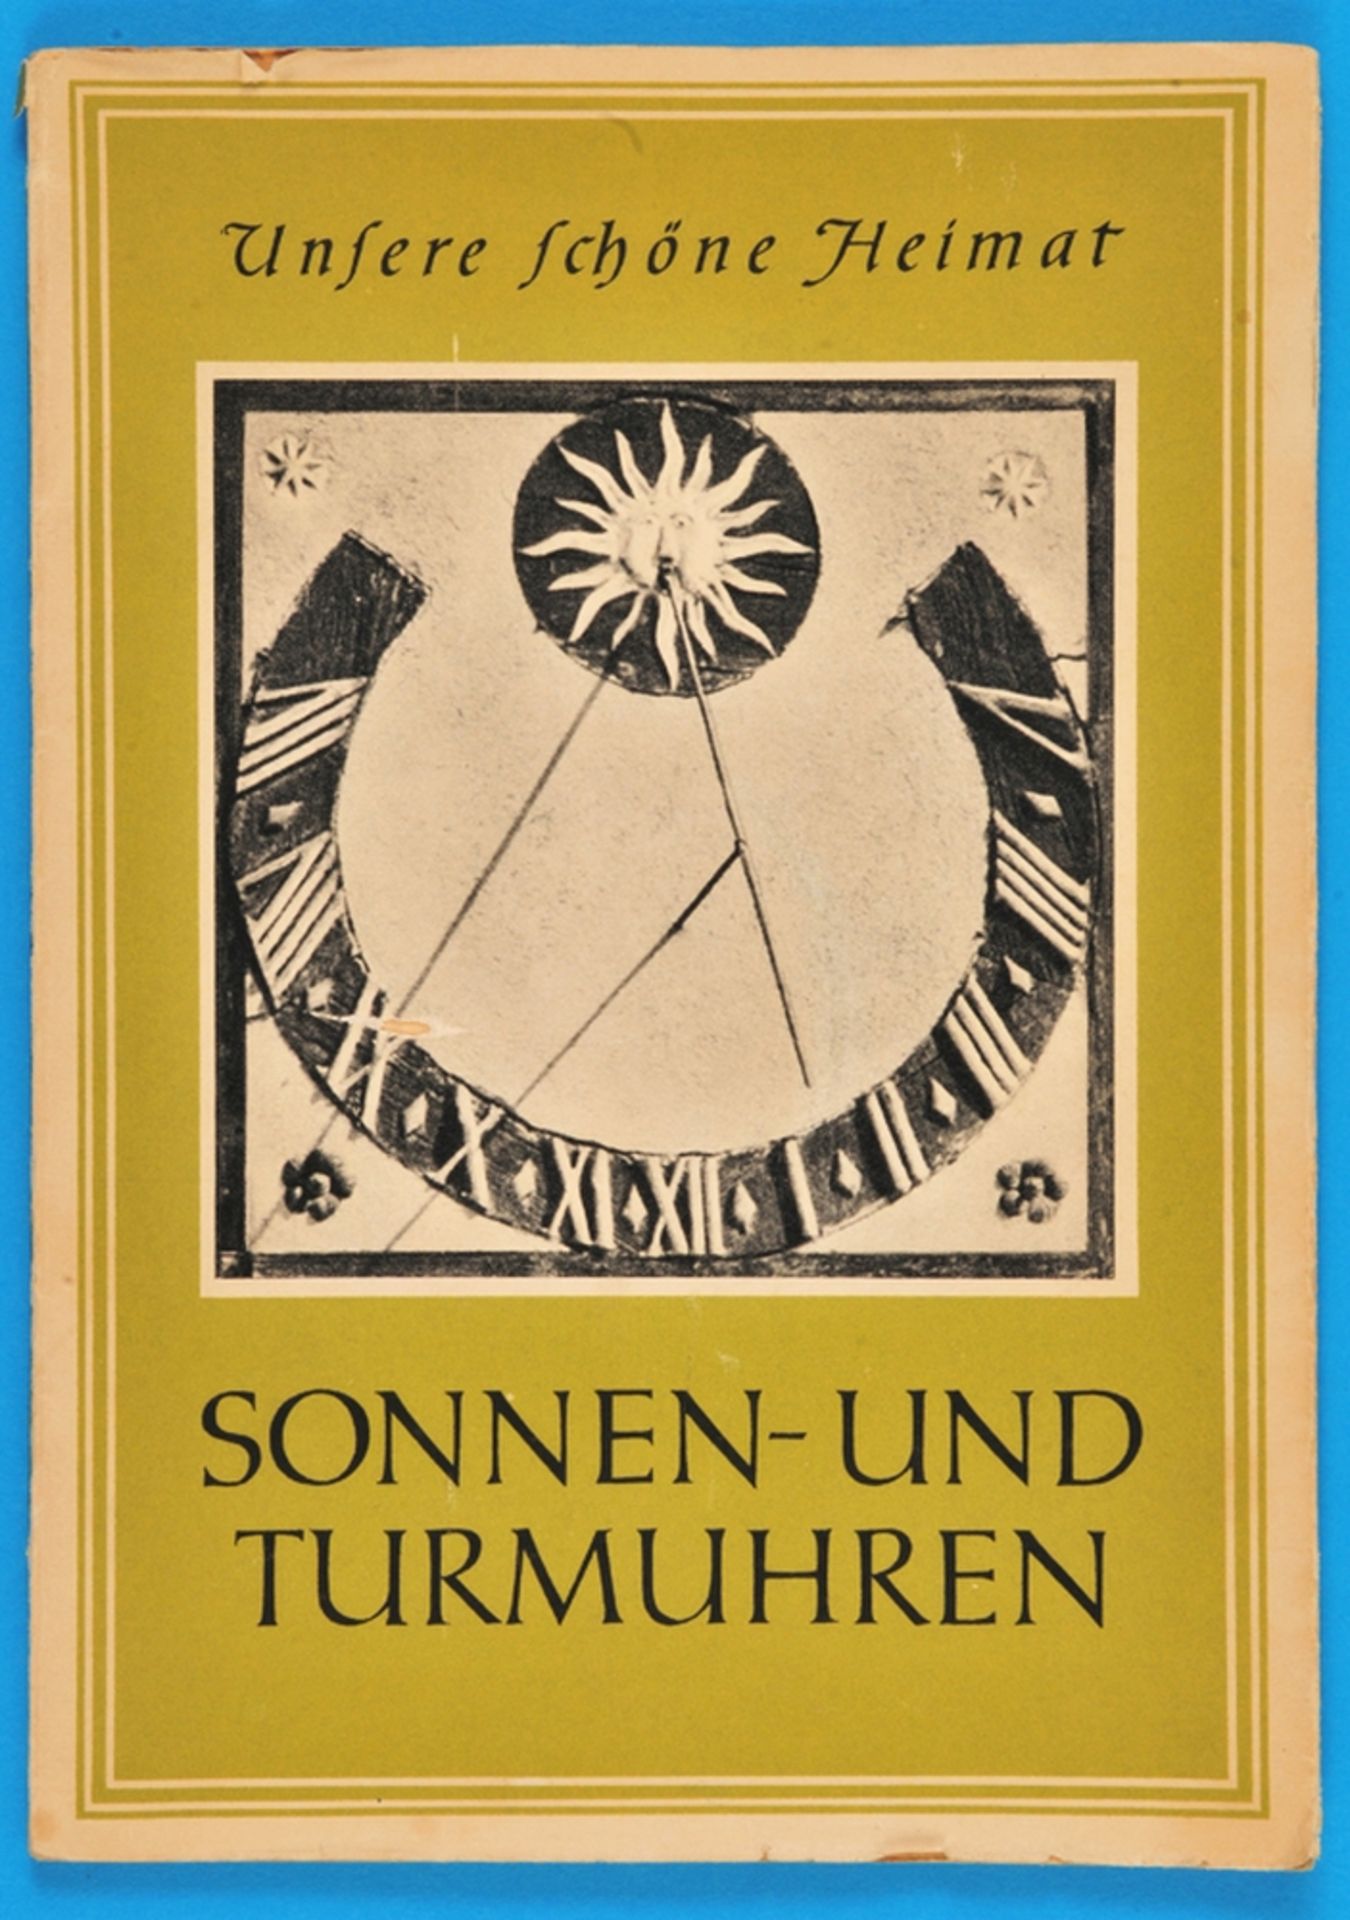 H. Grötzsch, Unsere Schöne Heimat – Sonnen- und Turmuhren, 1959